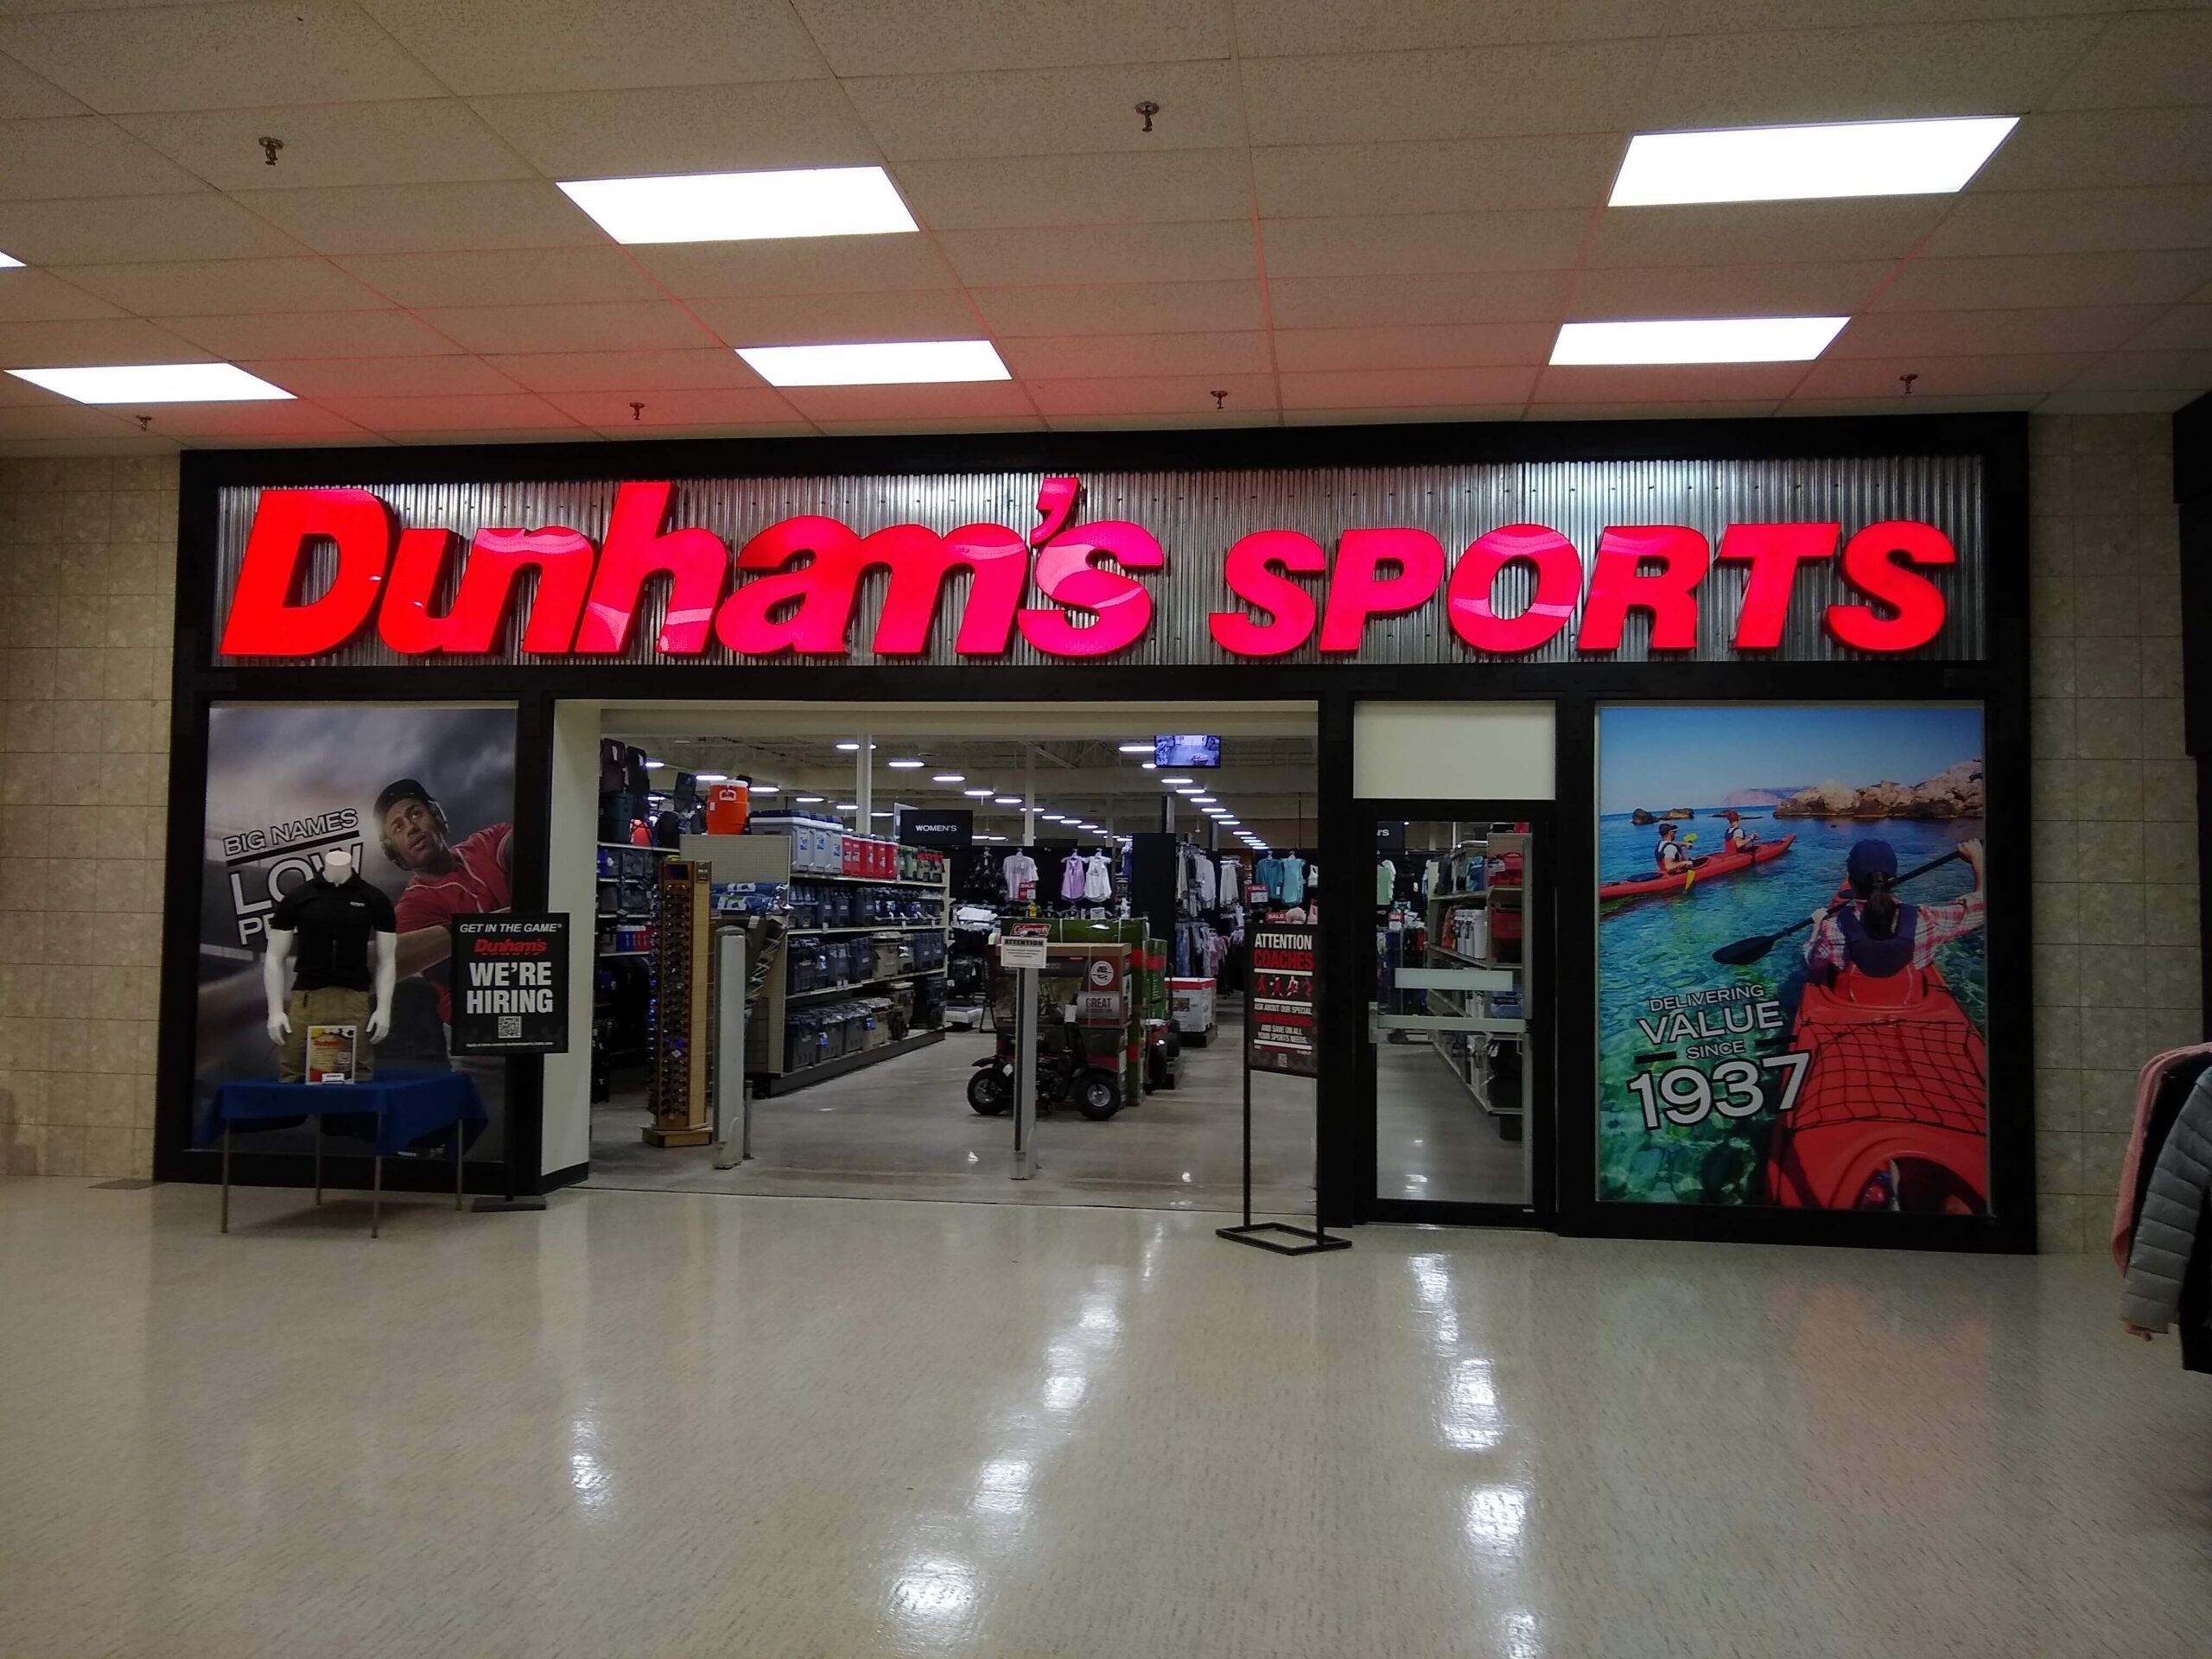 Dunhams Sports